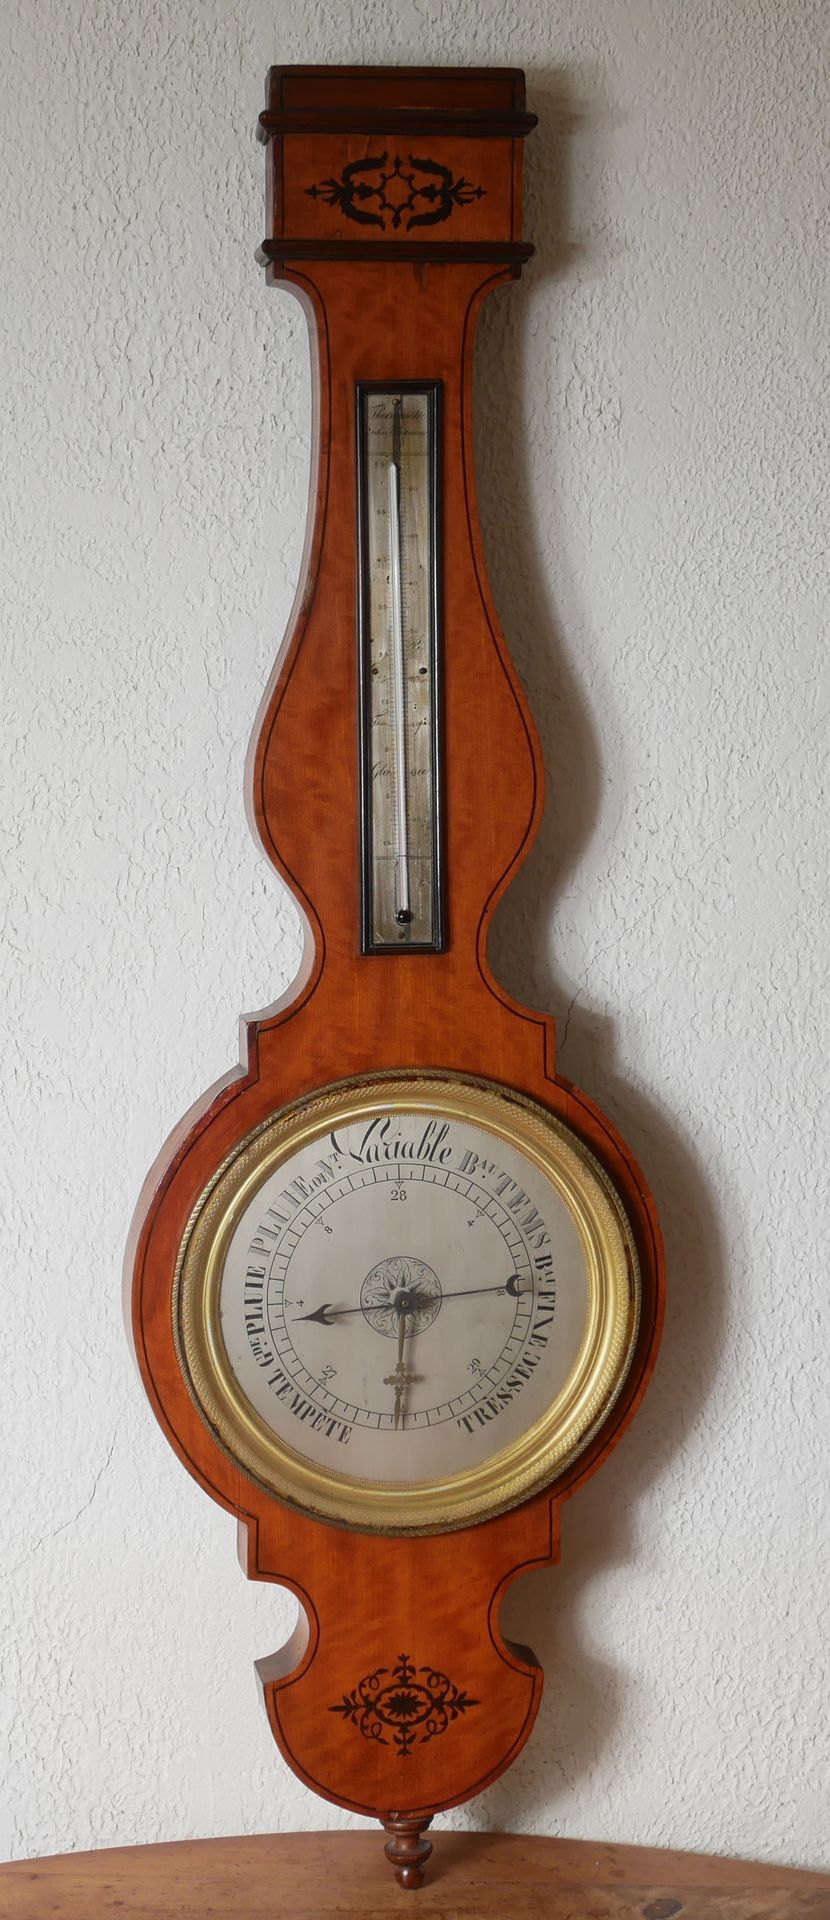 Null Barometro-termometro in impiallacciato

H: 103 cm (schegge, parti mancanti)